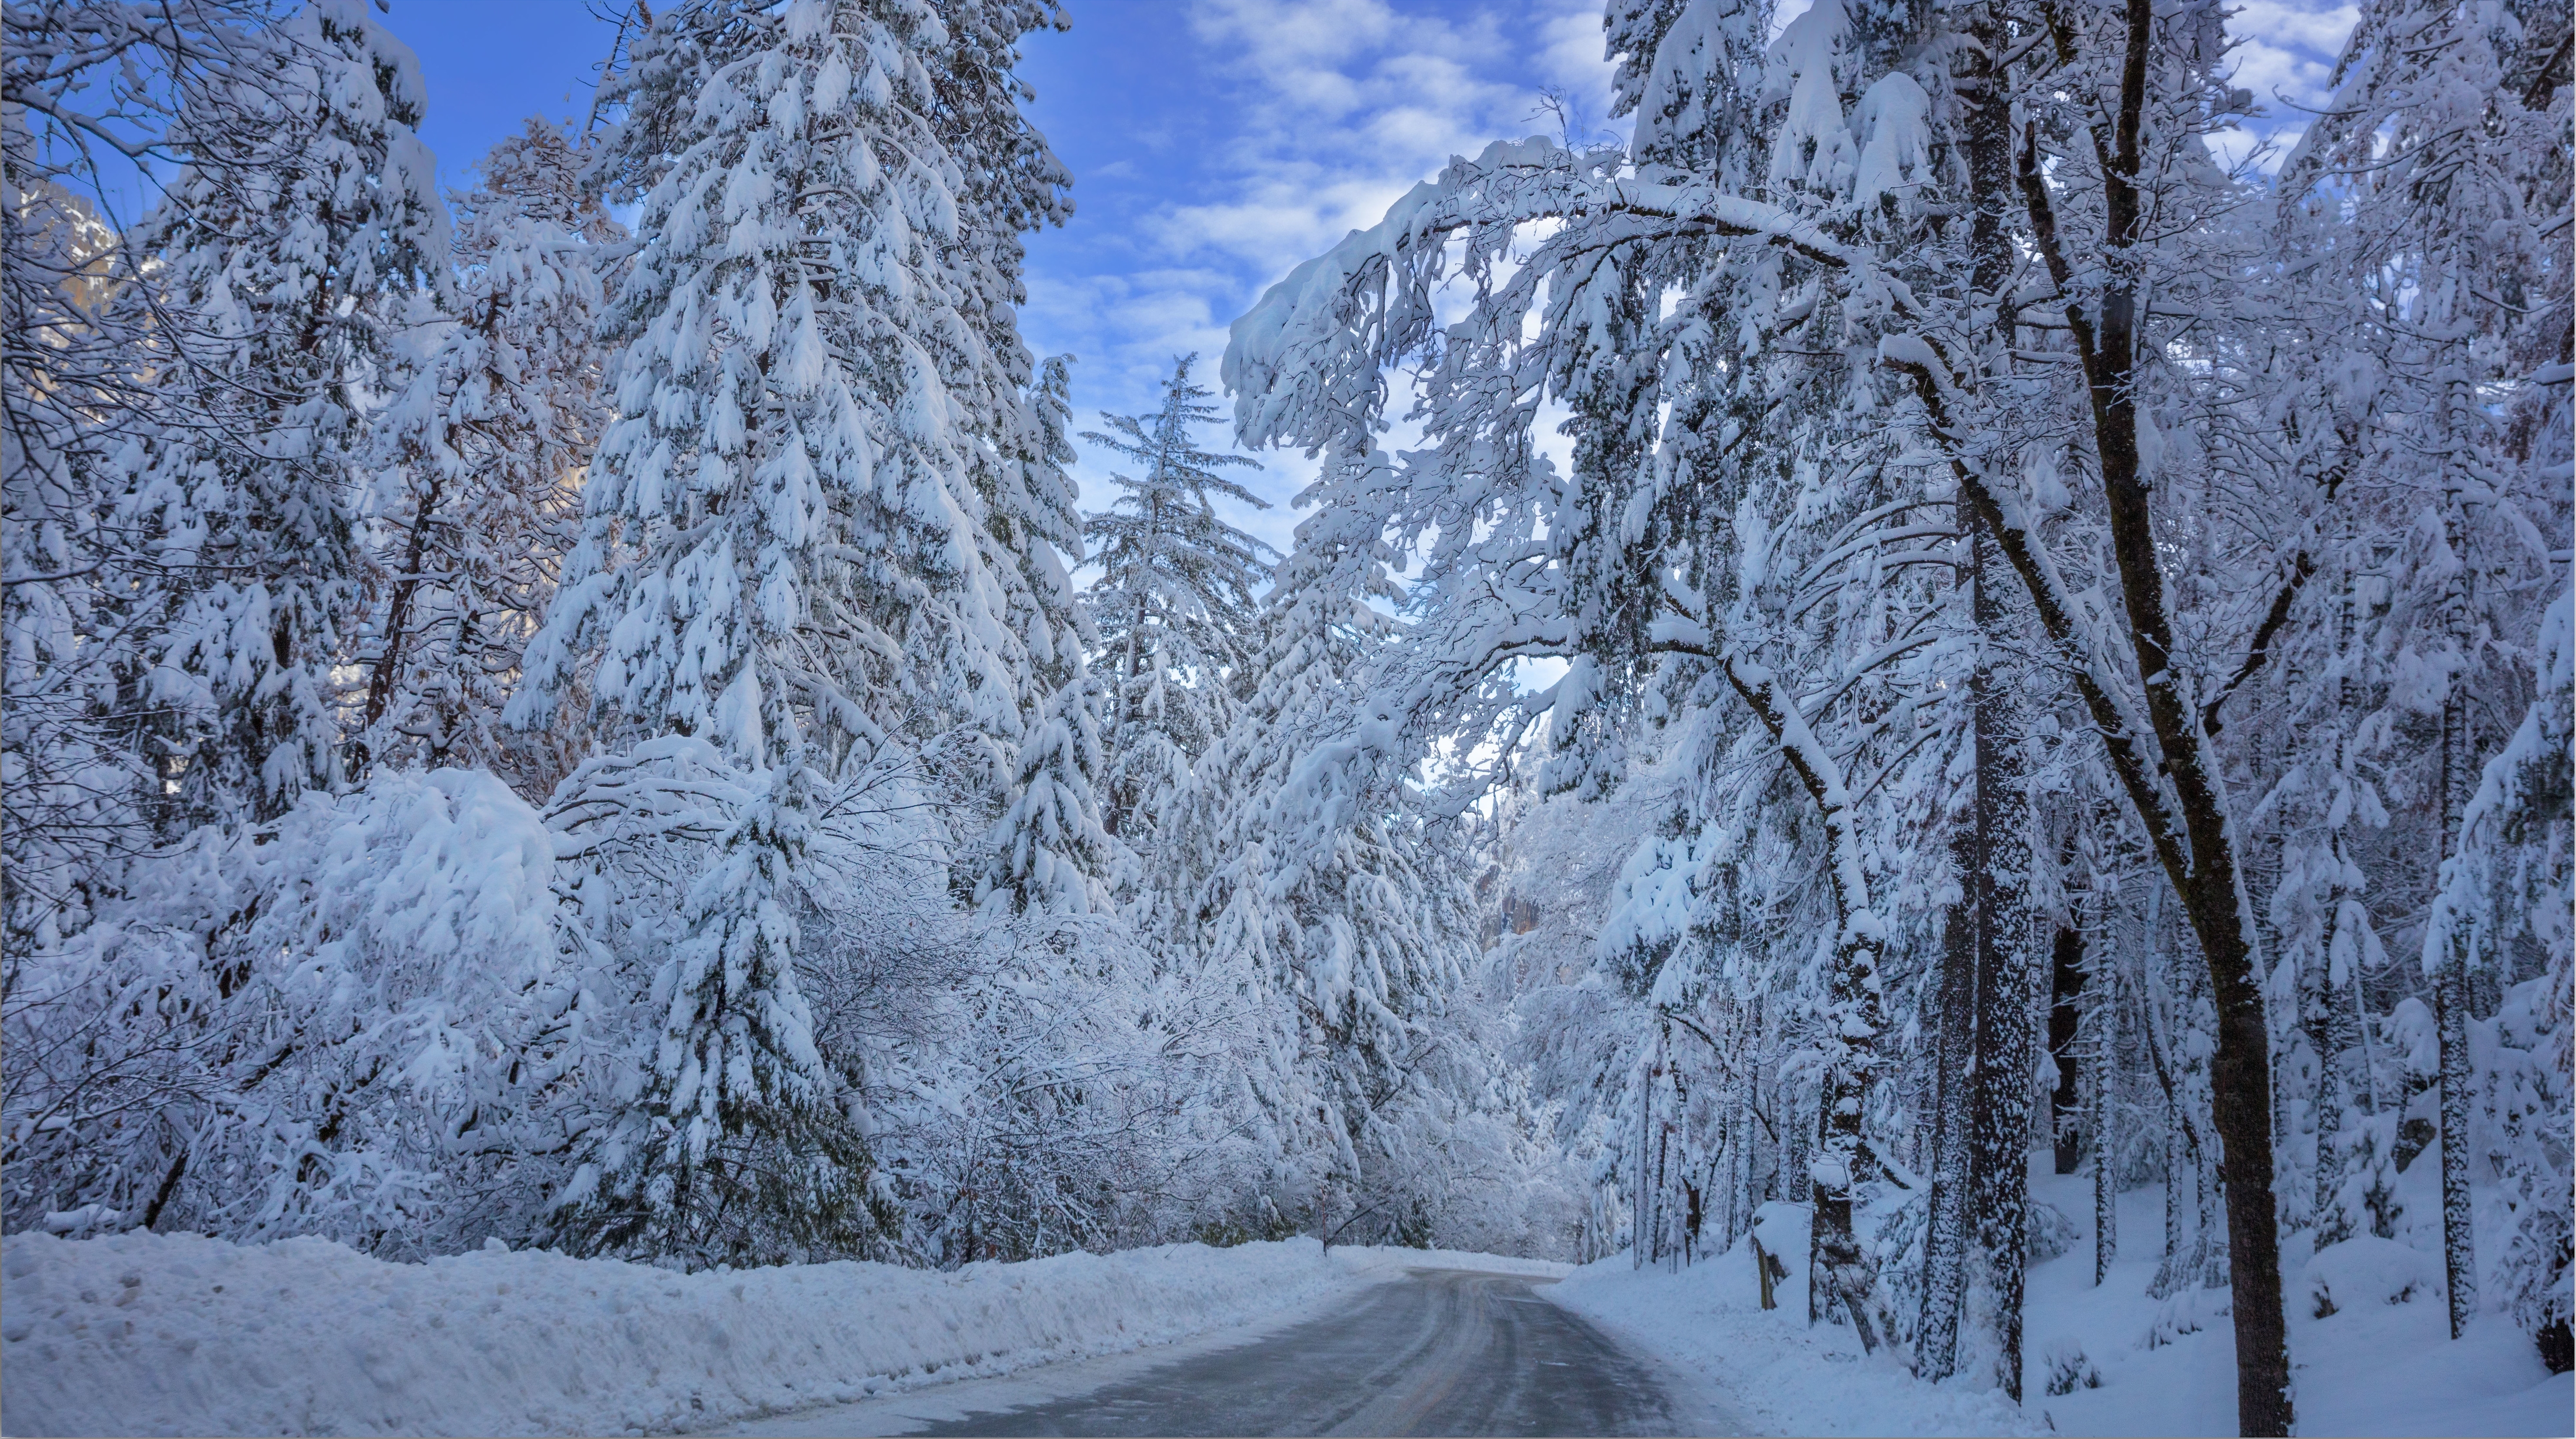 A fabulous winter road